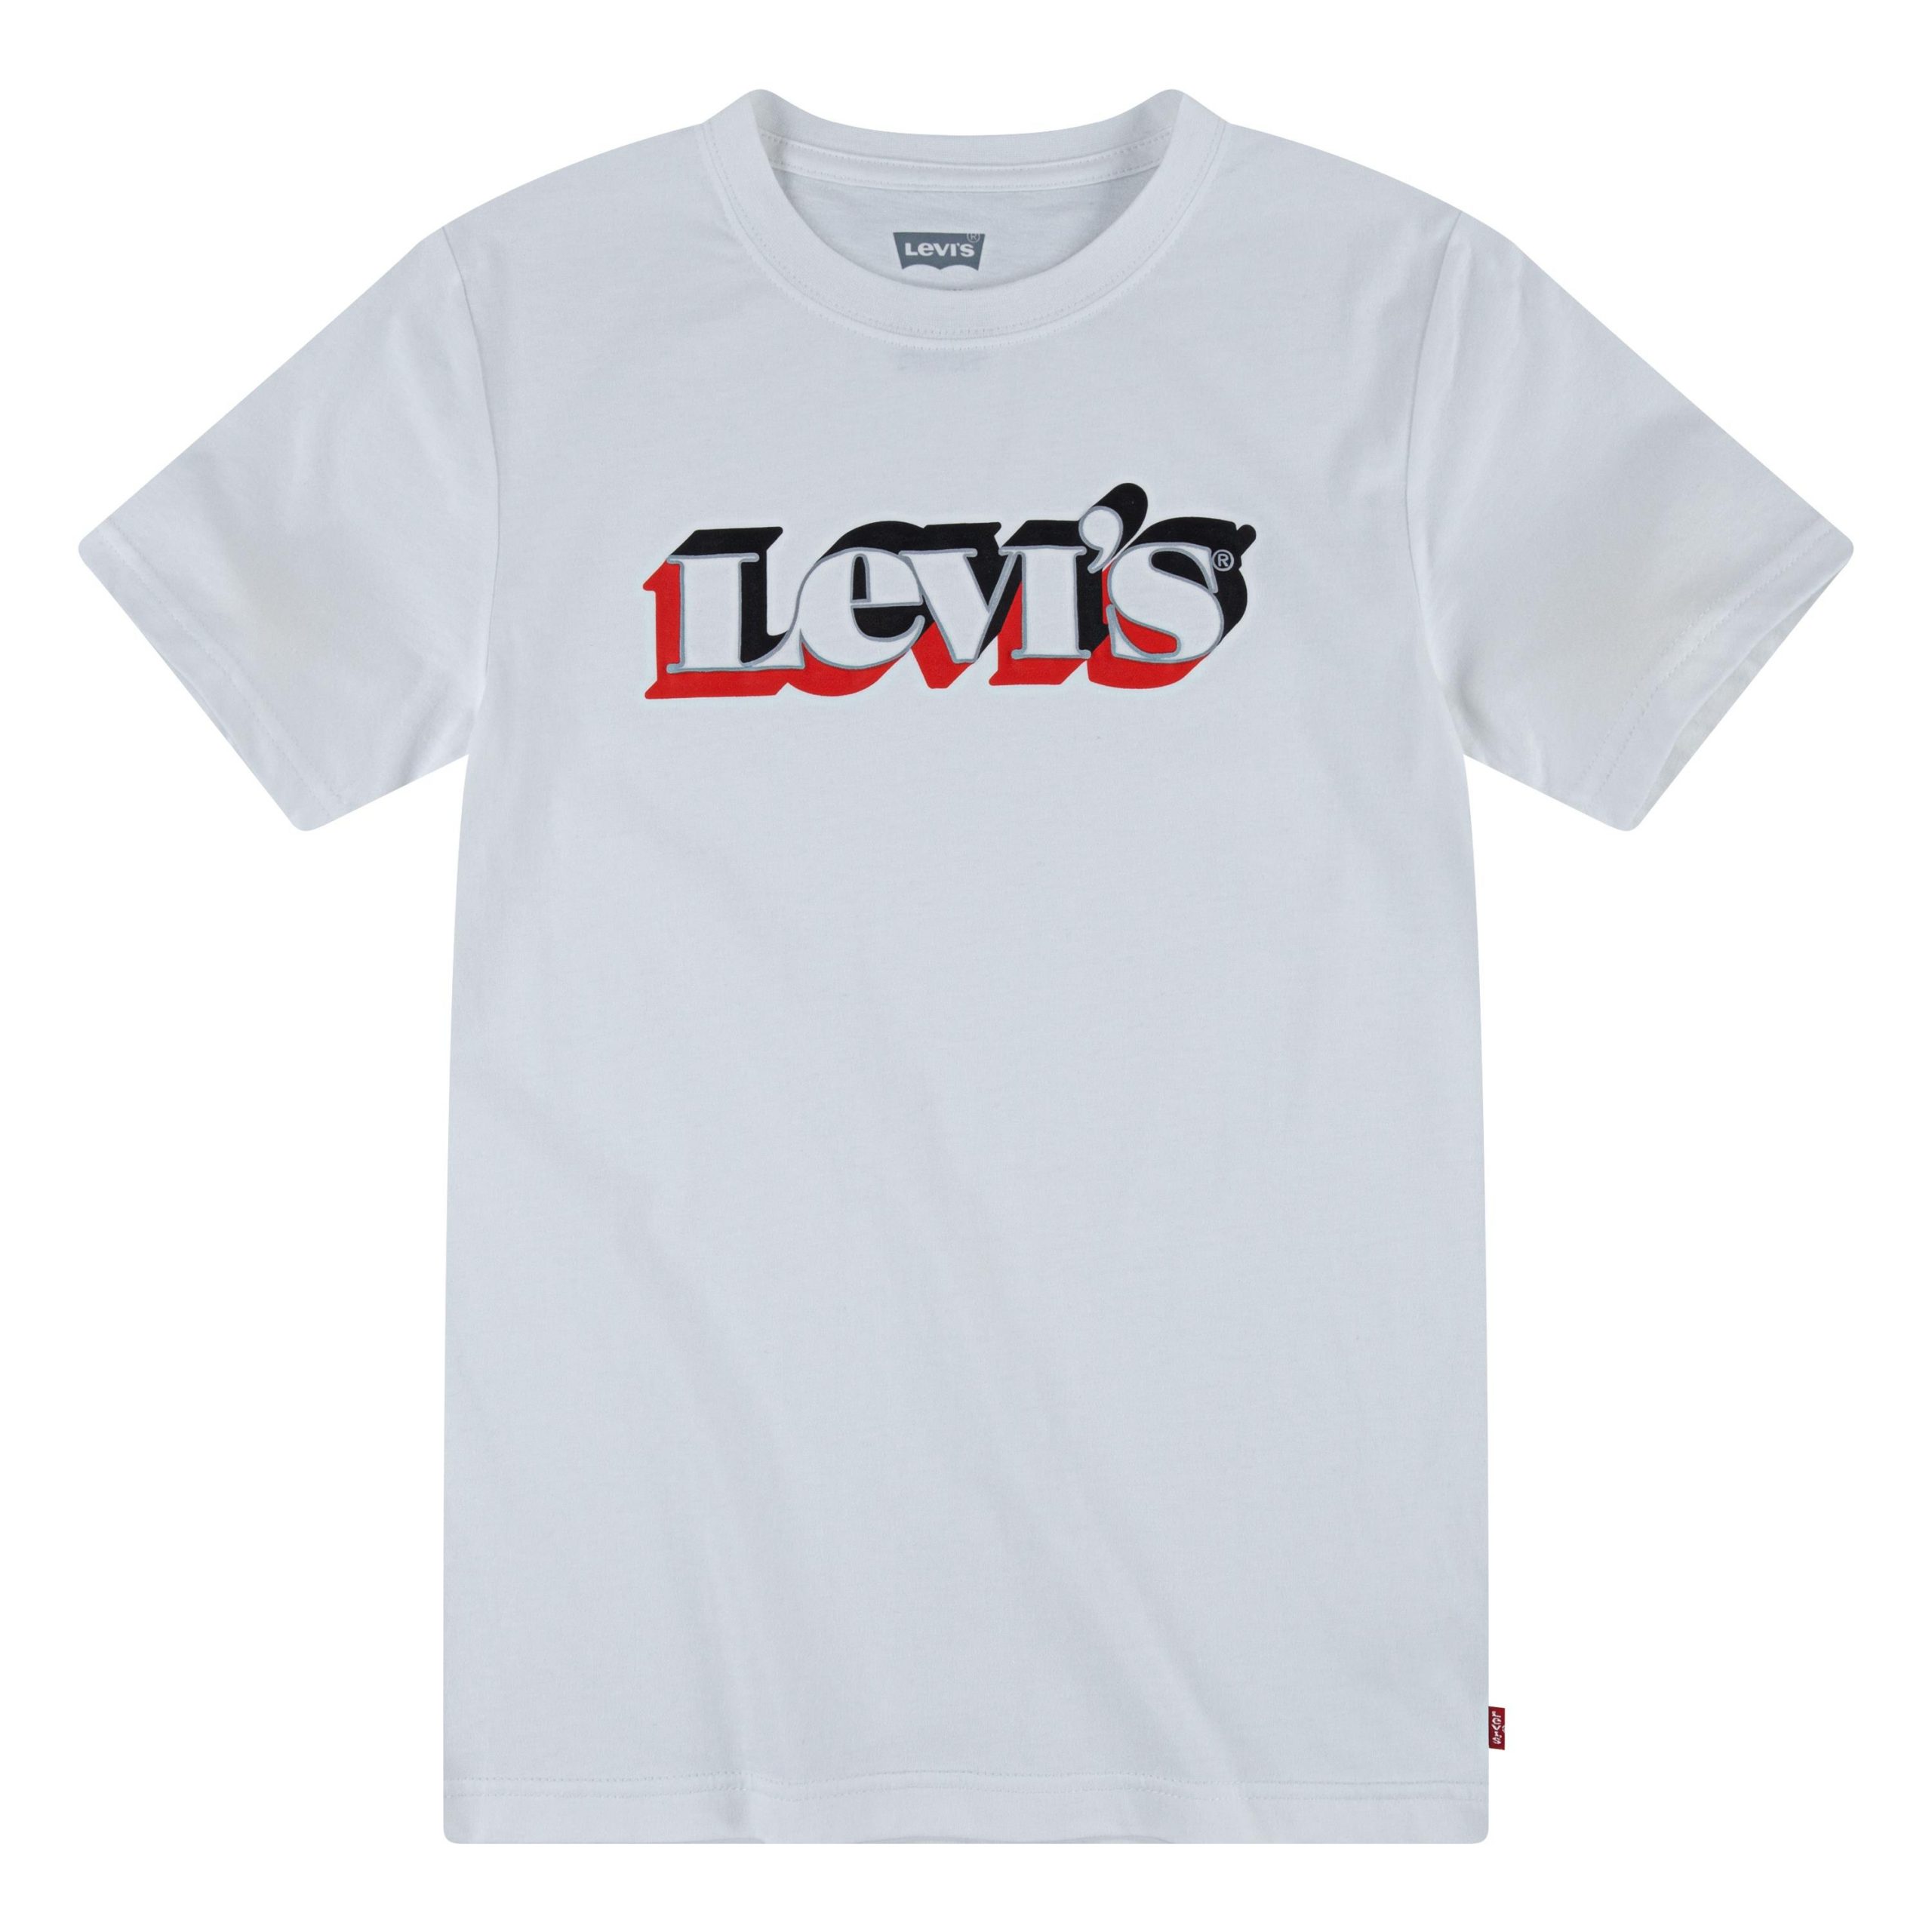 LEVIS KIDS - LEVIS KIDS T-SHIRT - 8ED573